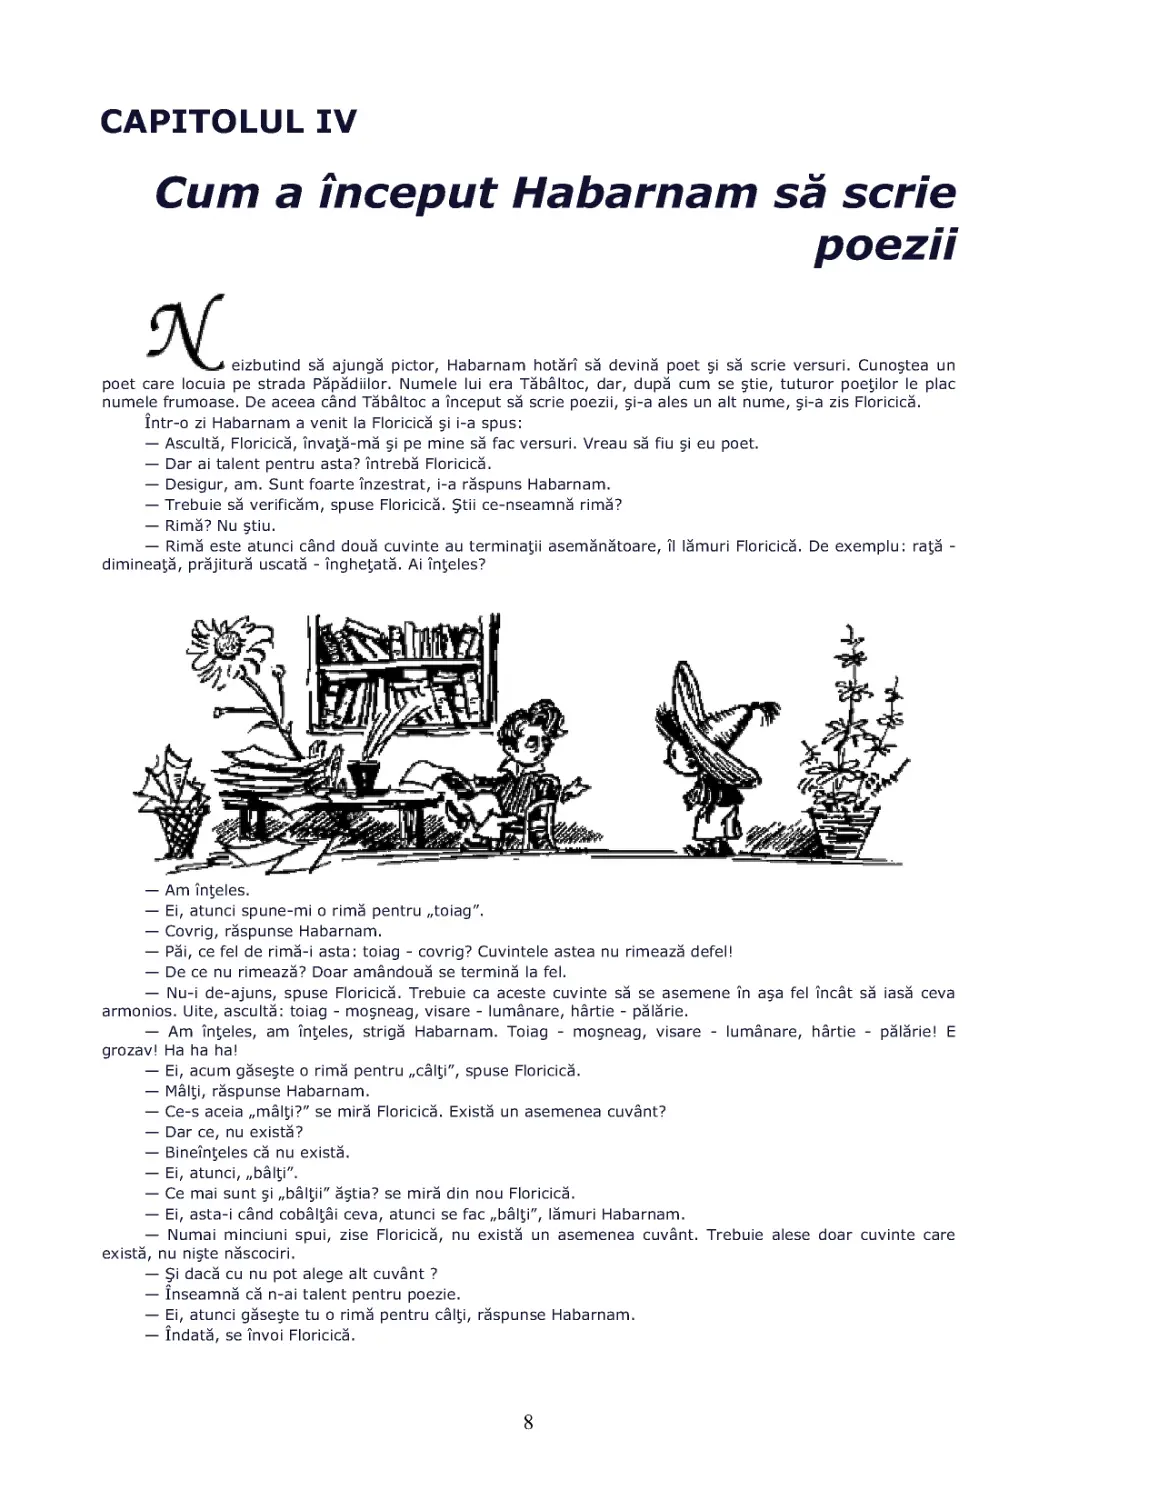 Cap.IV Cum a inceput Habarnam sa scrie poezii